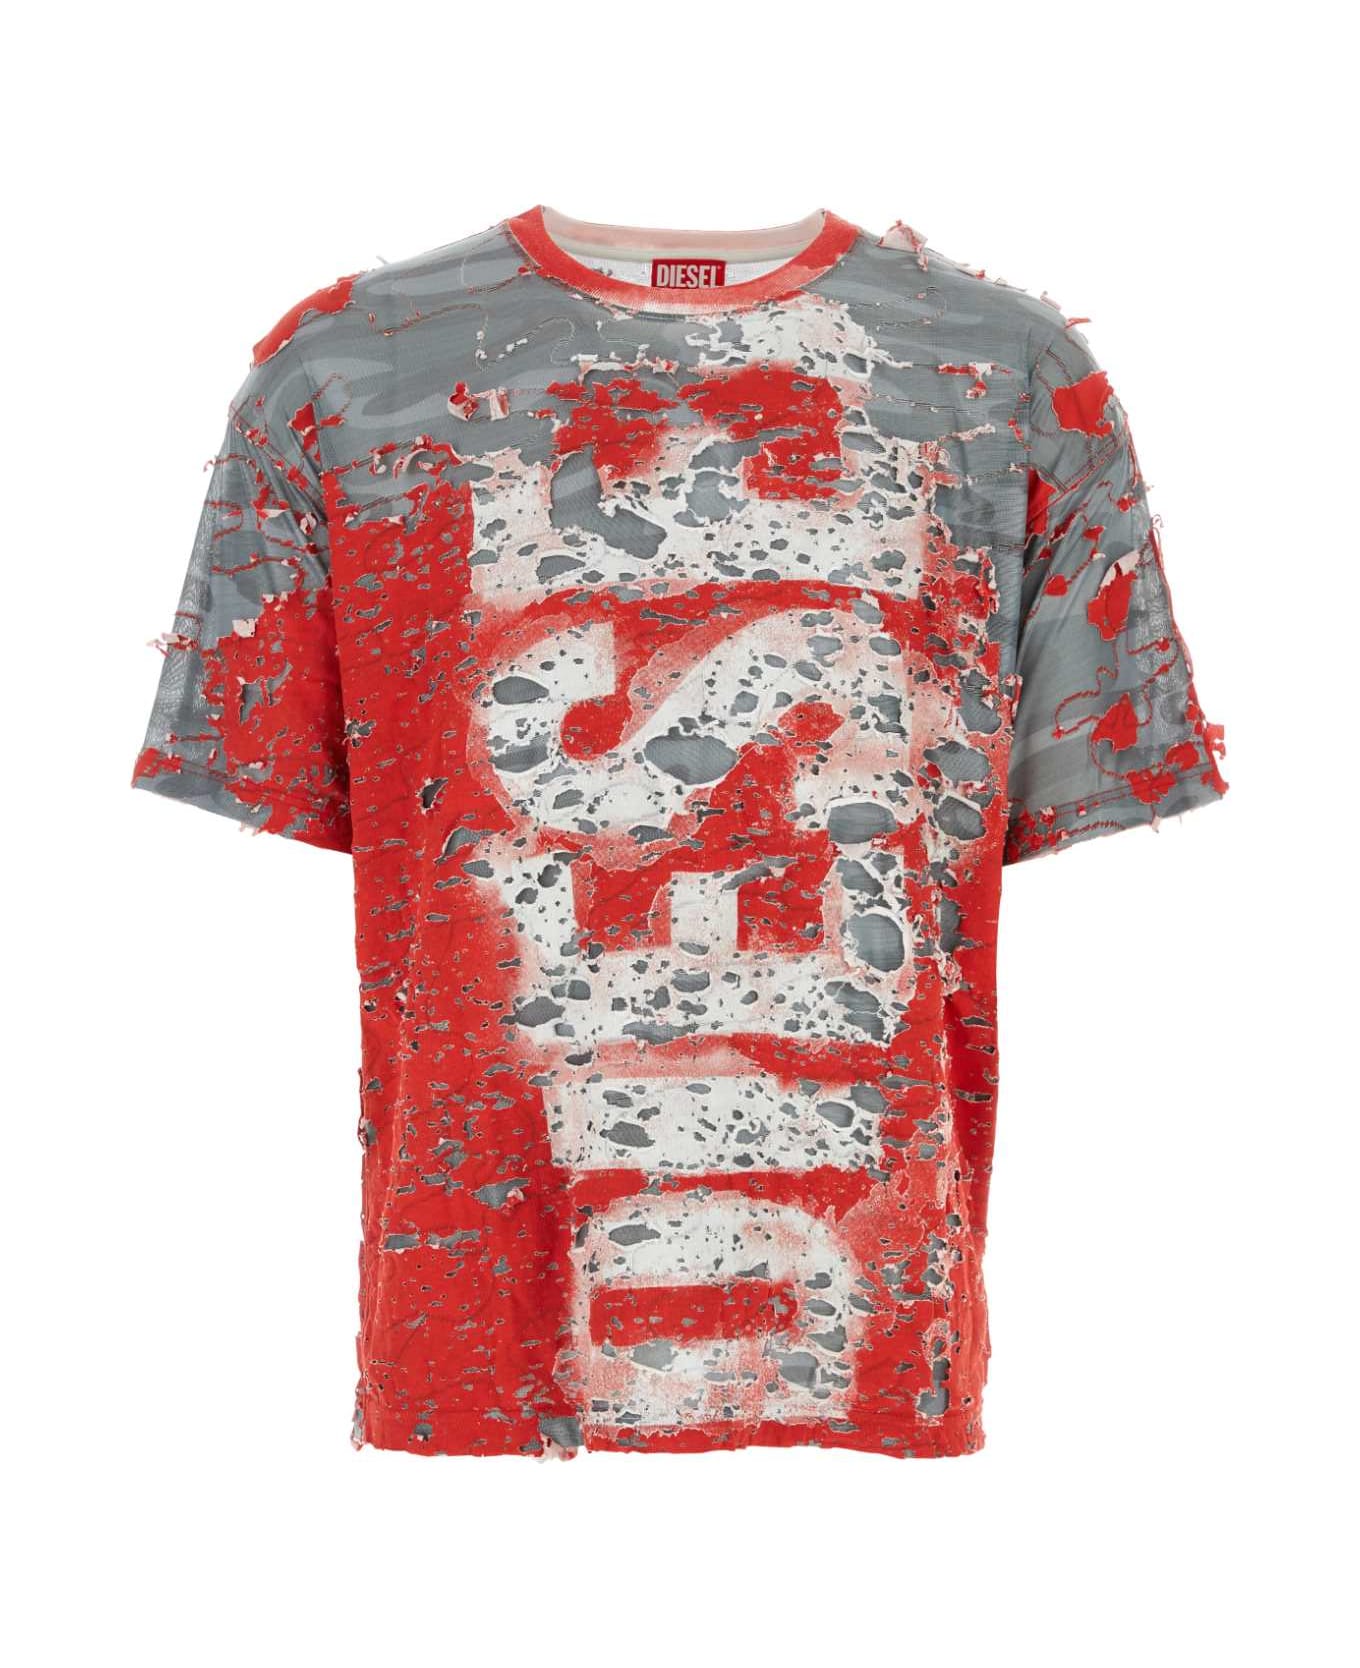 Diesel Multicolor Cotton Blend T-boxt-peel T-shirt - 42AA